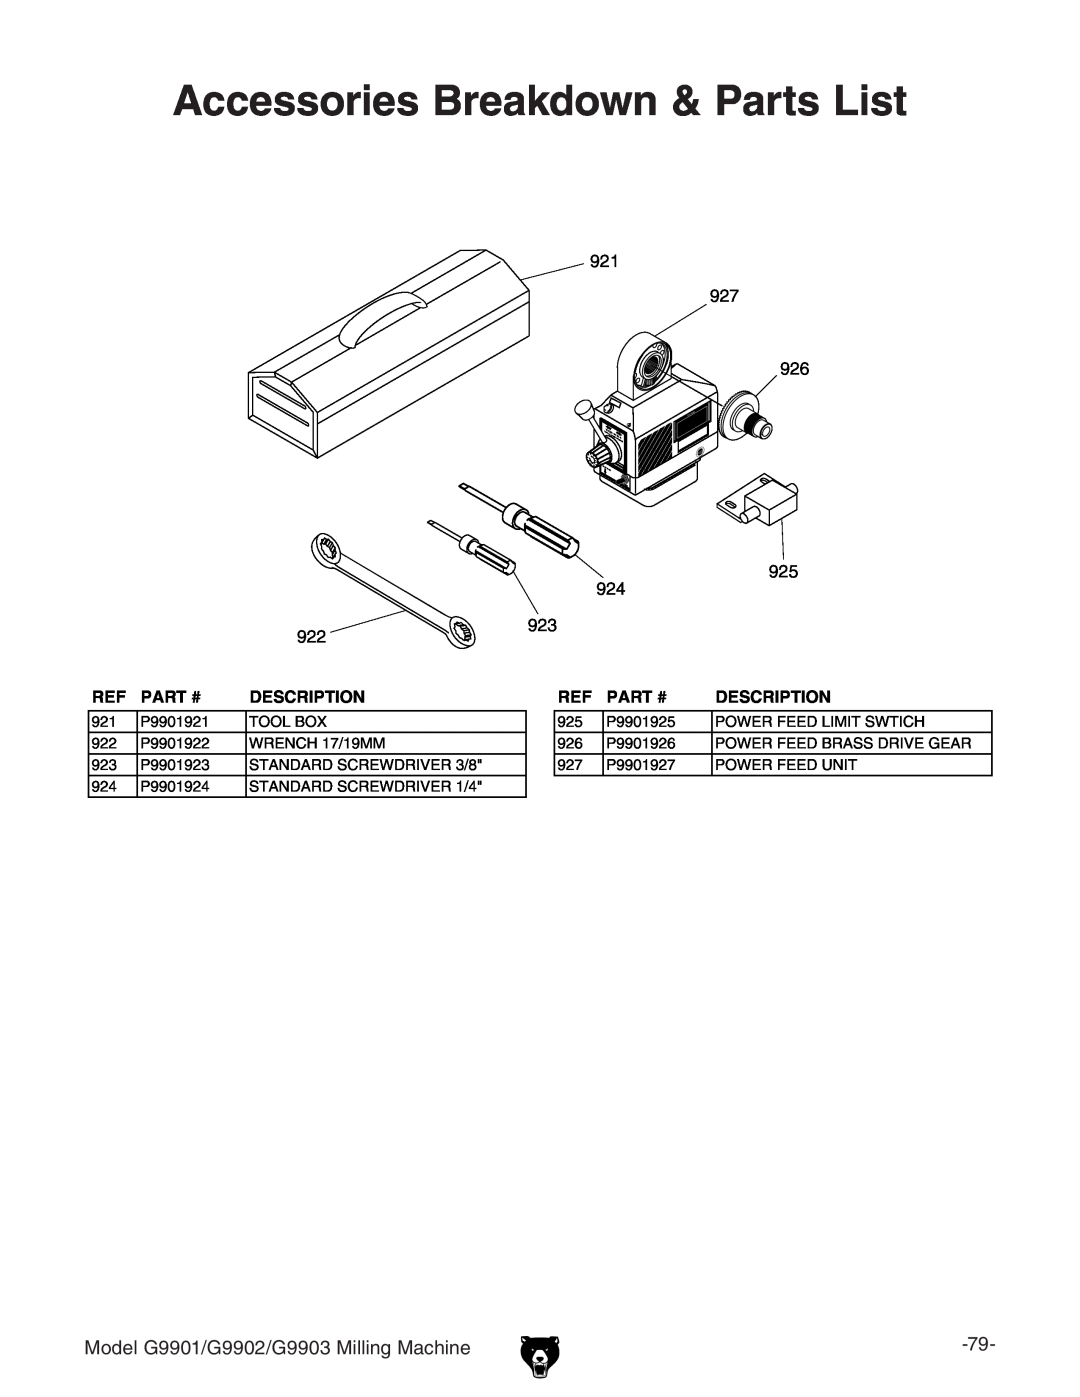 Grizzly manual Accessories Breakdown & Parts List, Model G9901/G9902/G9903 Milling Machine, Part #, Description 